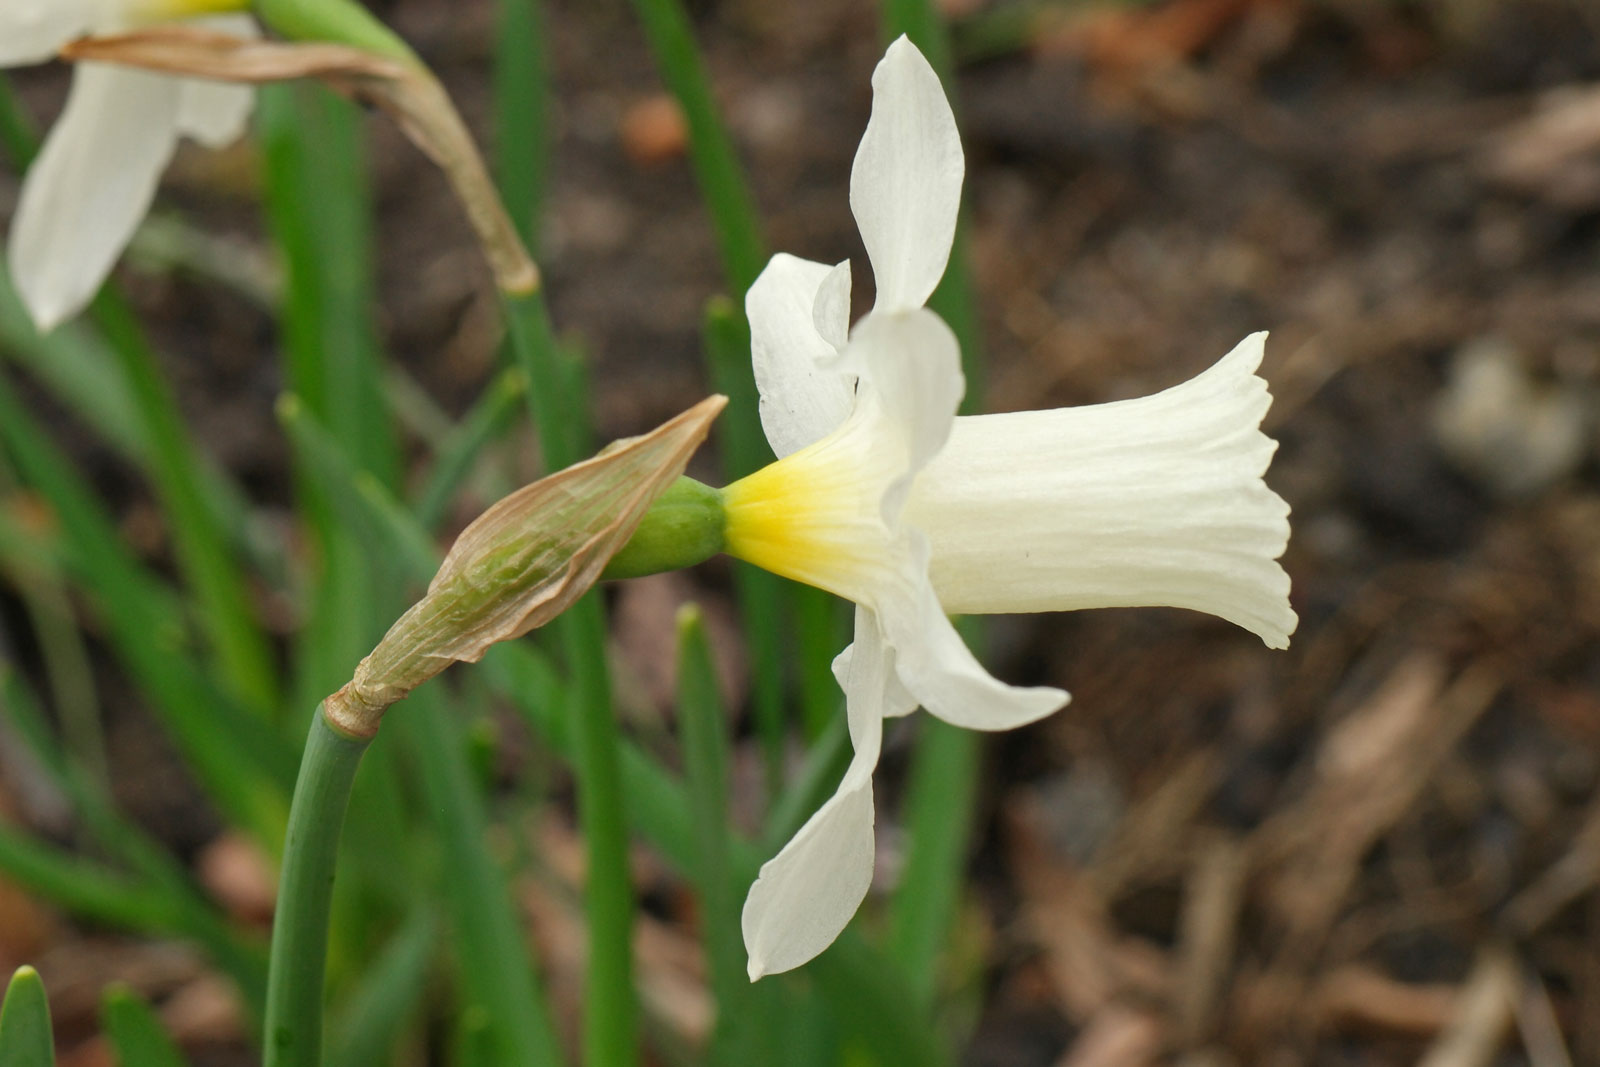 Narcissus Elka